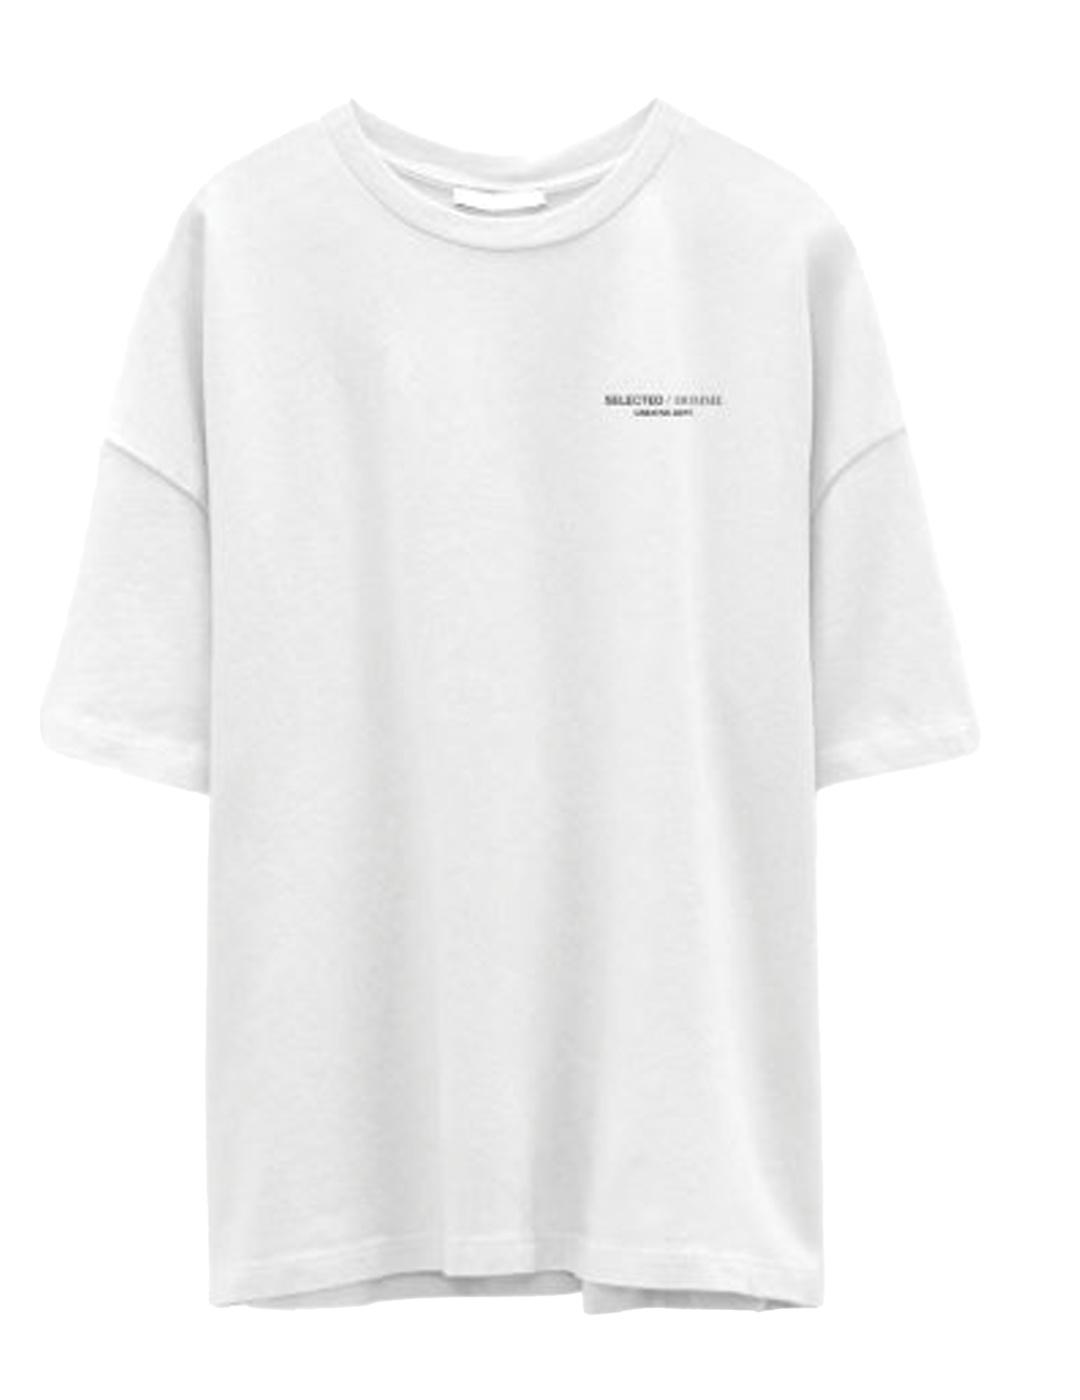 Camiseta Selected Henty blanco manga corta para hombre